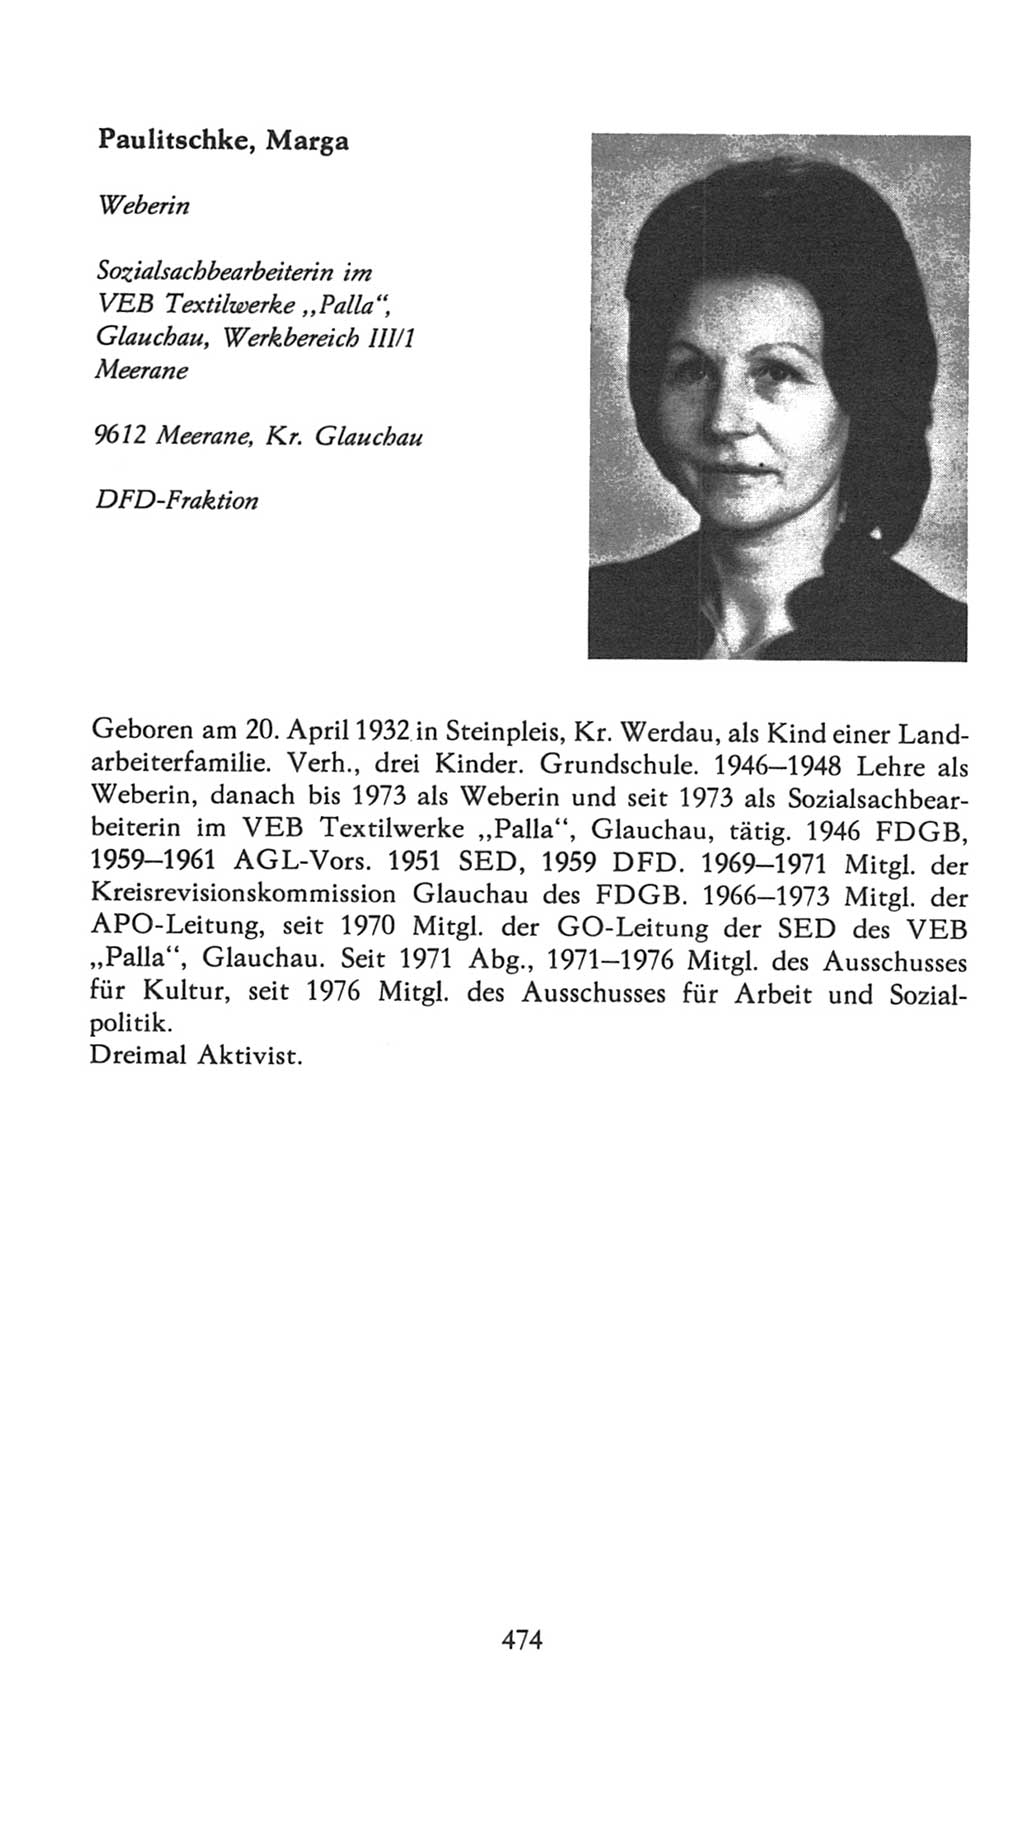 Volkskammer (VK) der Deutschen Demokratischen Republik (DDR), 7. Wahlperiode 1976-1981, Seite 474 (VK. DDR 7. WP. 1976-1981, S. 474)